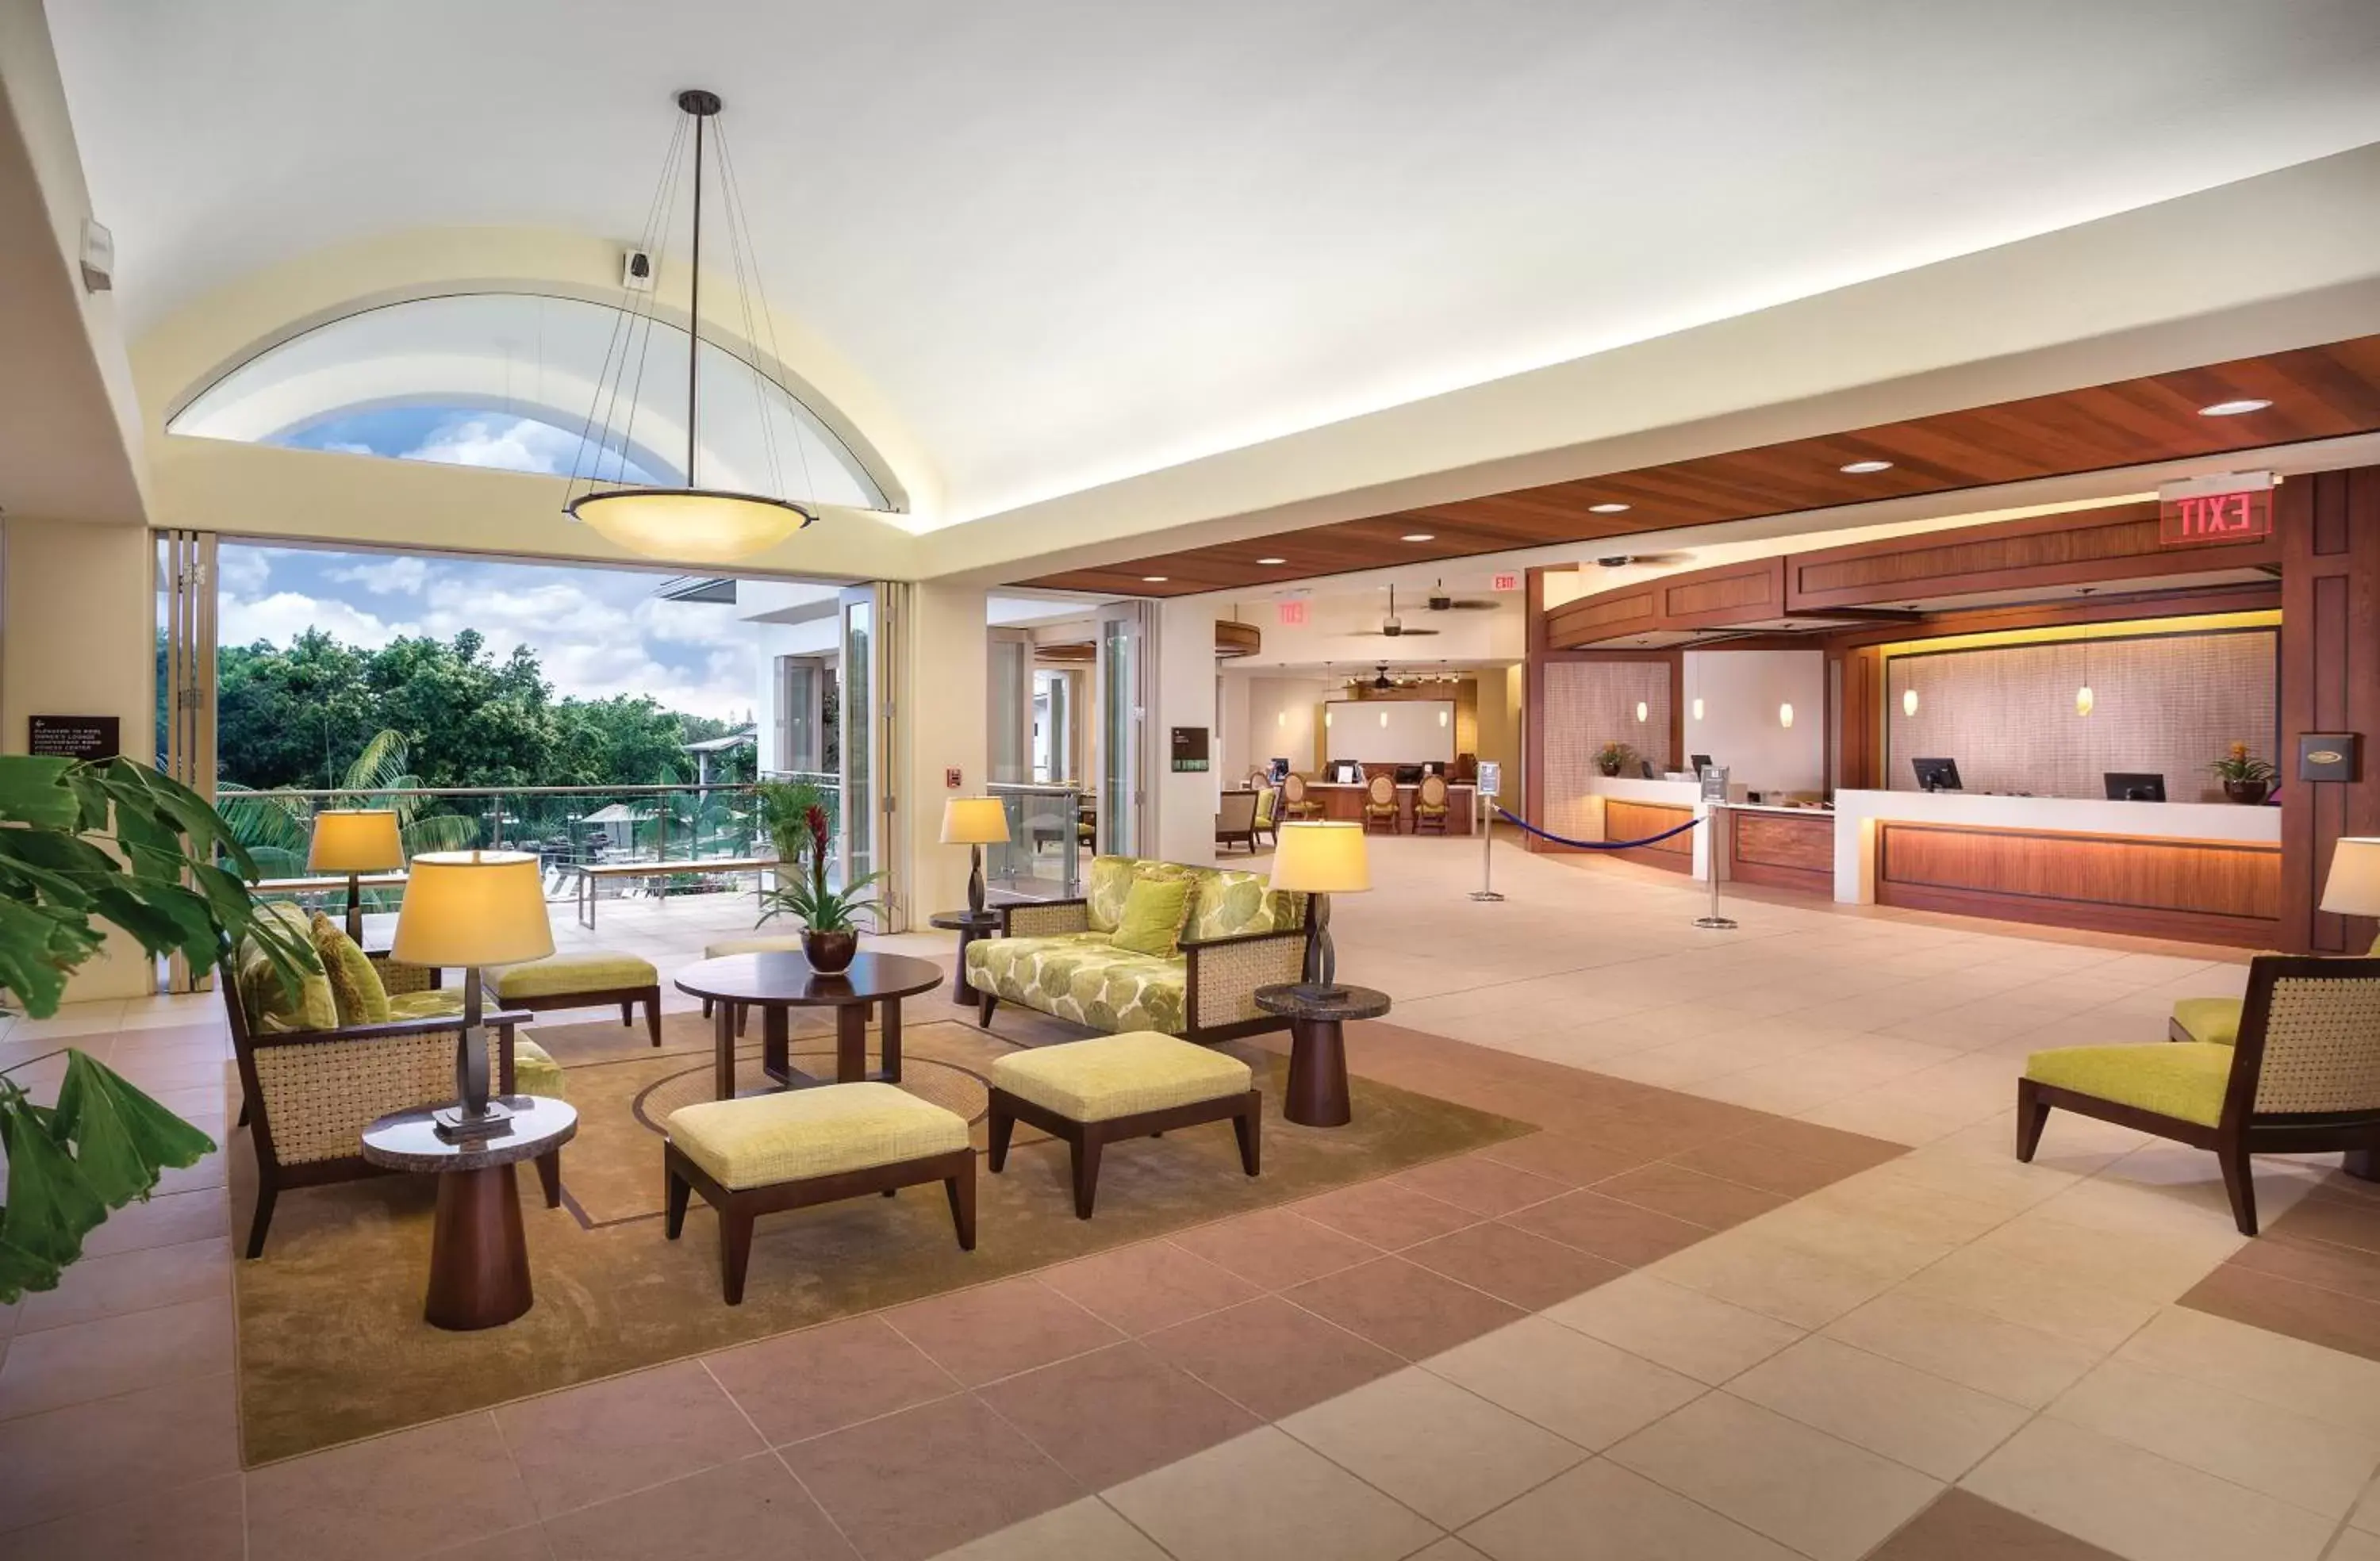 Lobby or reception, Lobby/Reception in Club Wyndham Bali Hai Villas